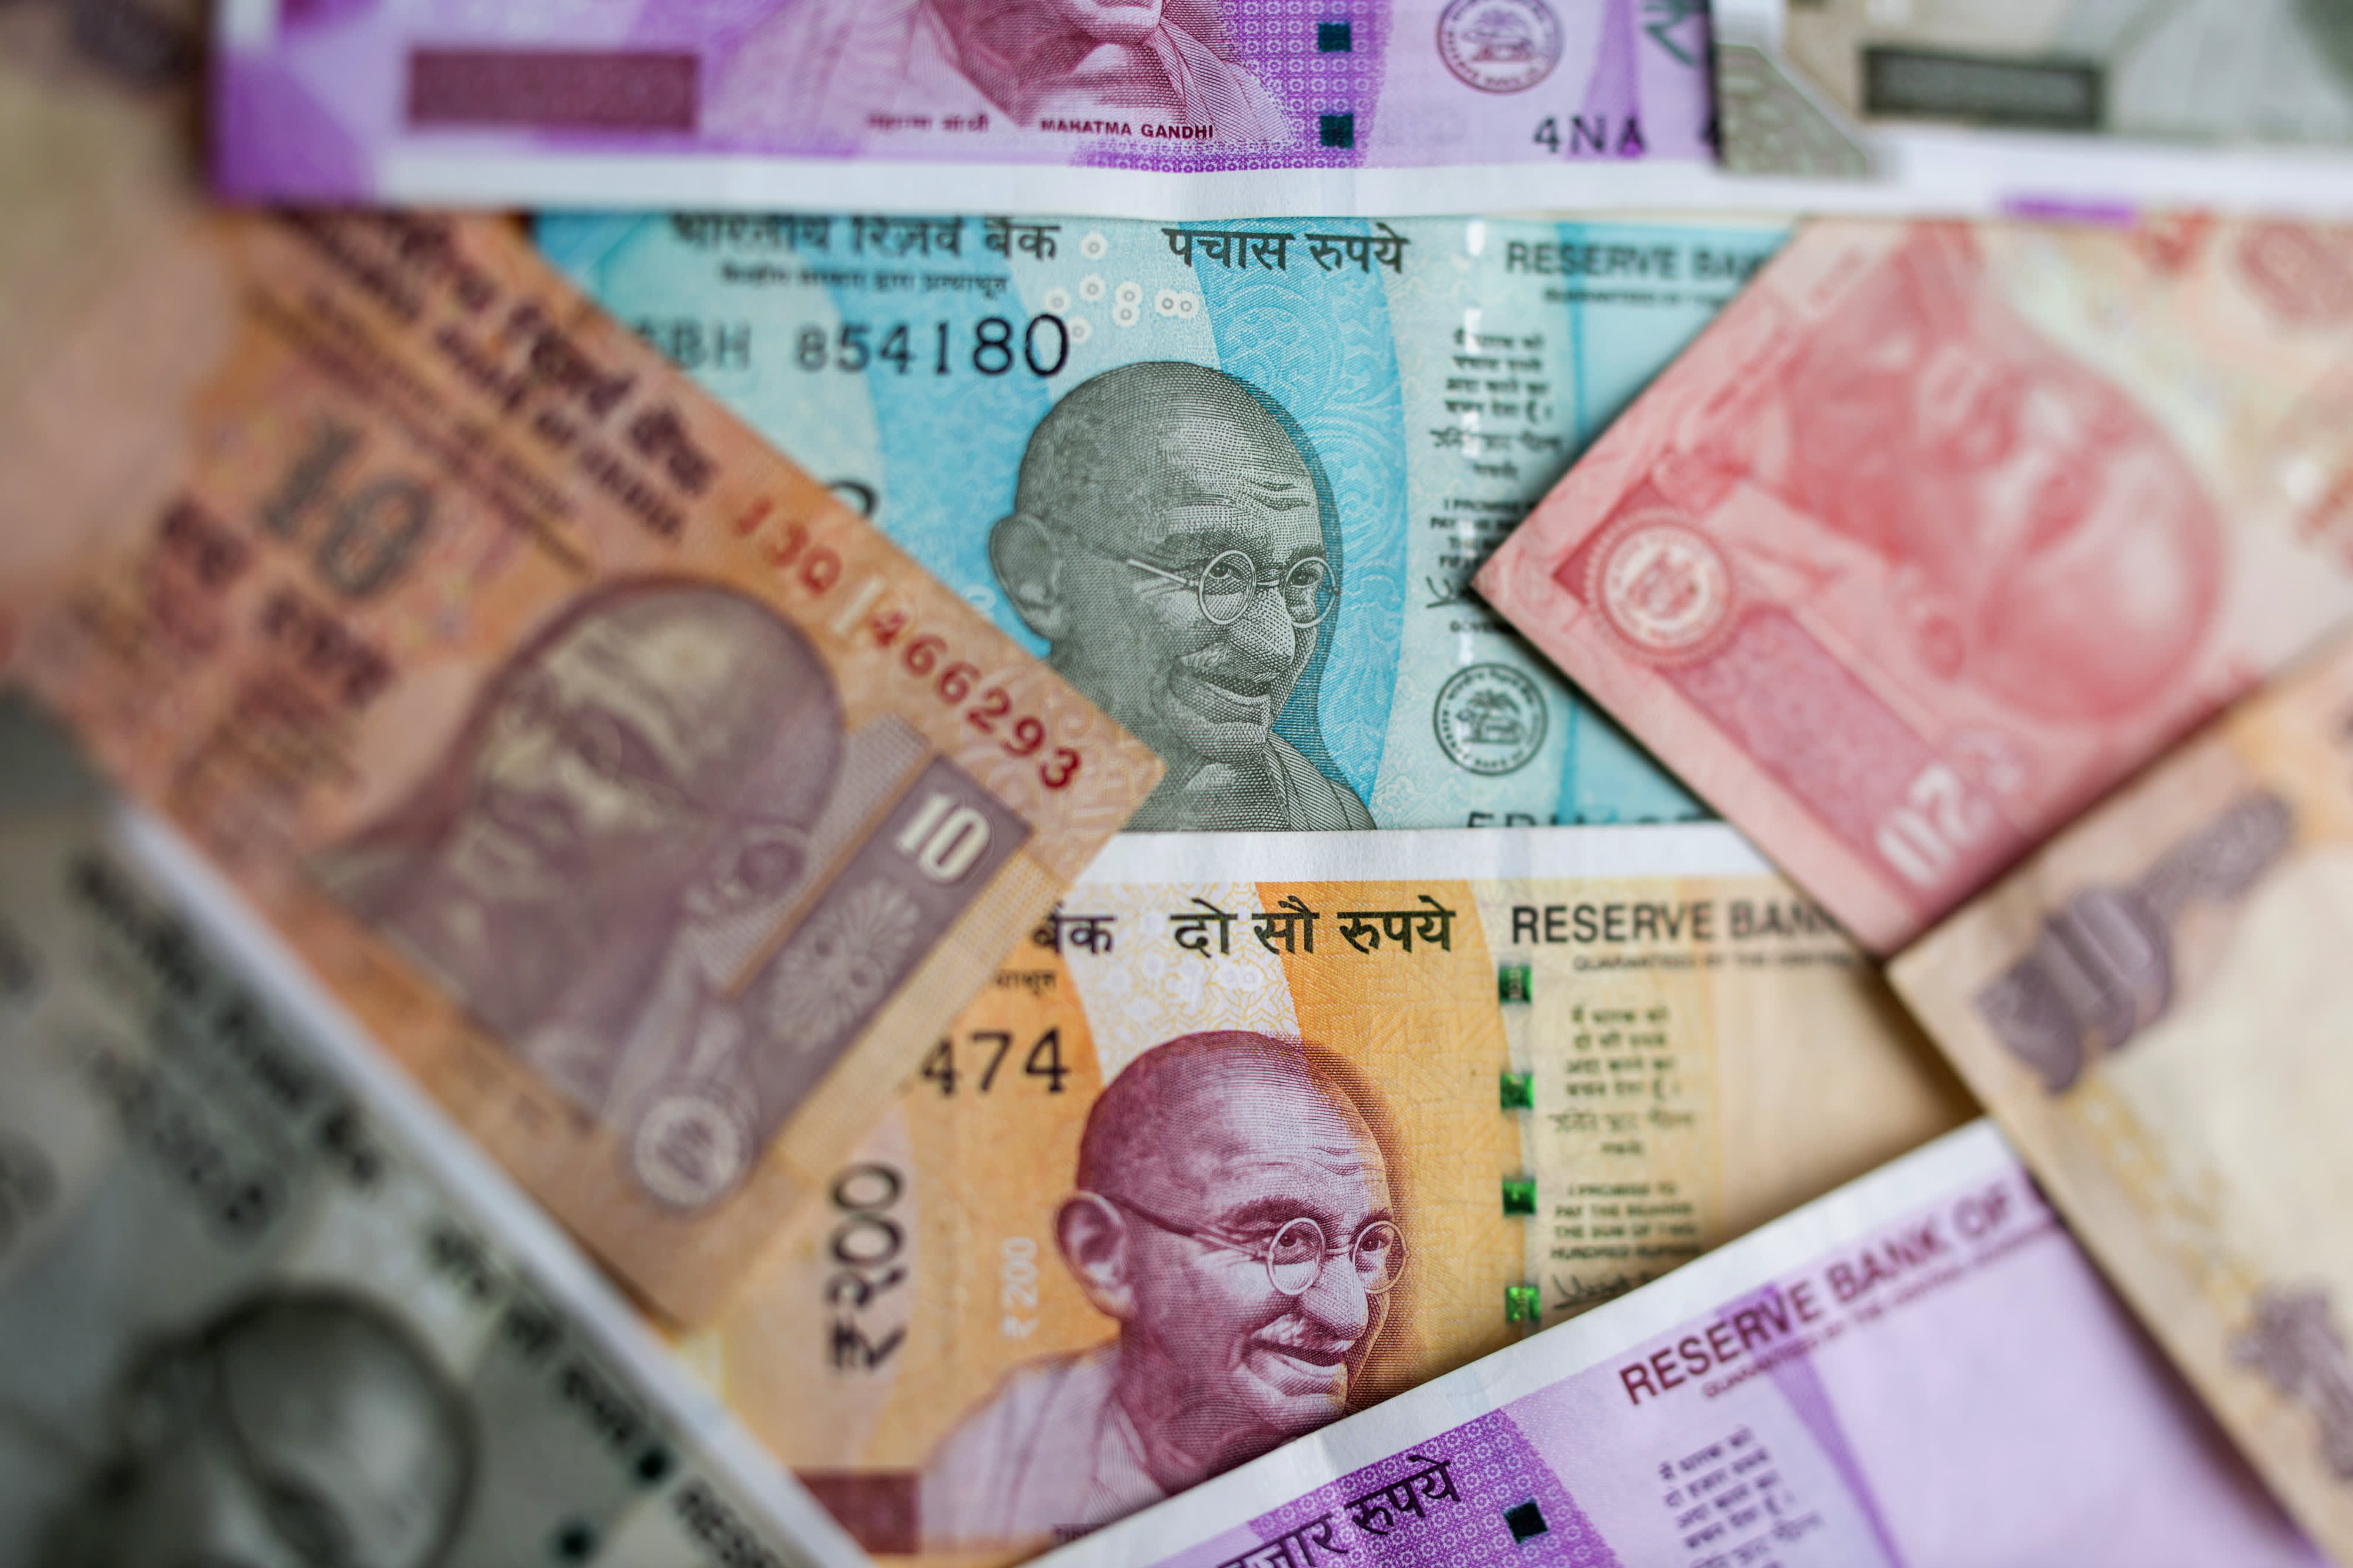 Billionaire Jhunjhunwala says India should “ban bitcoin”